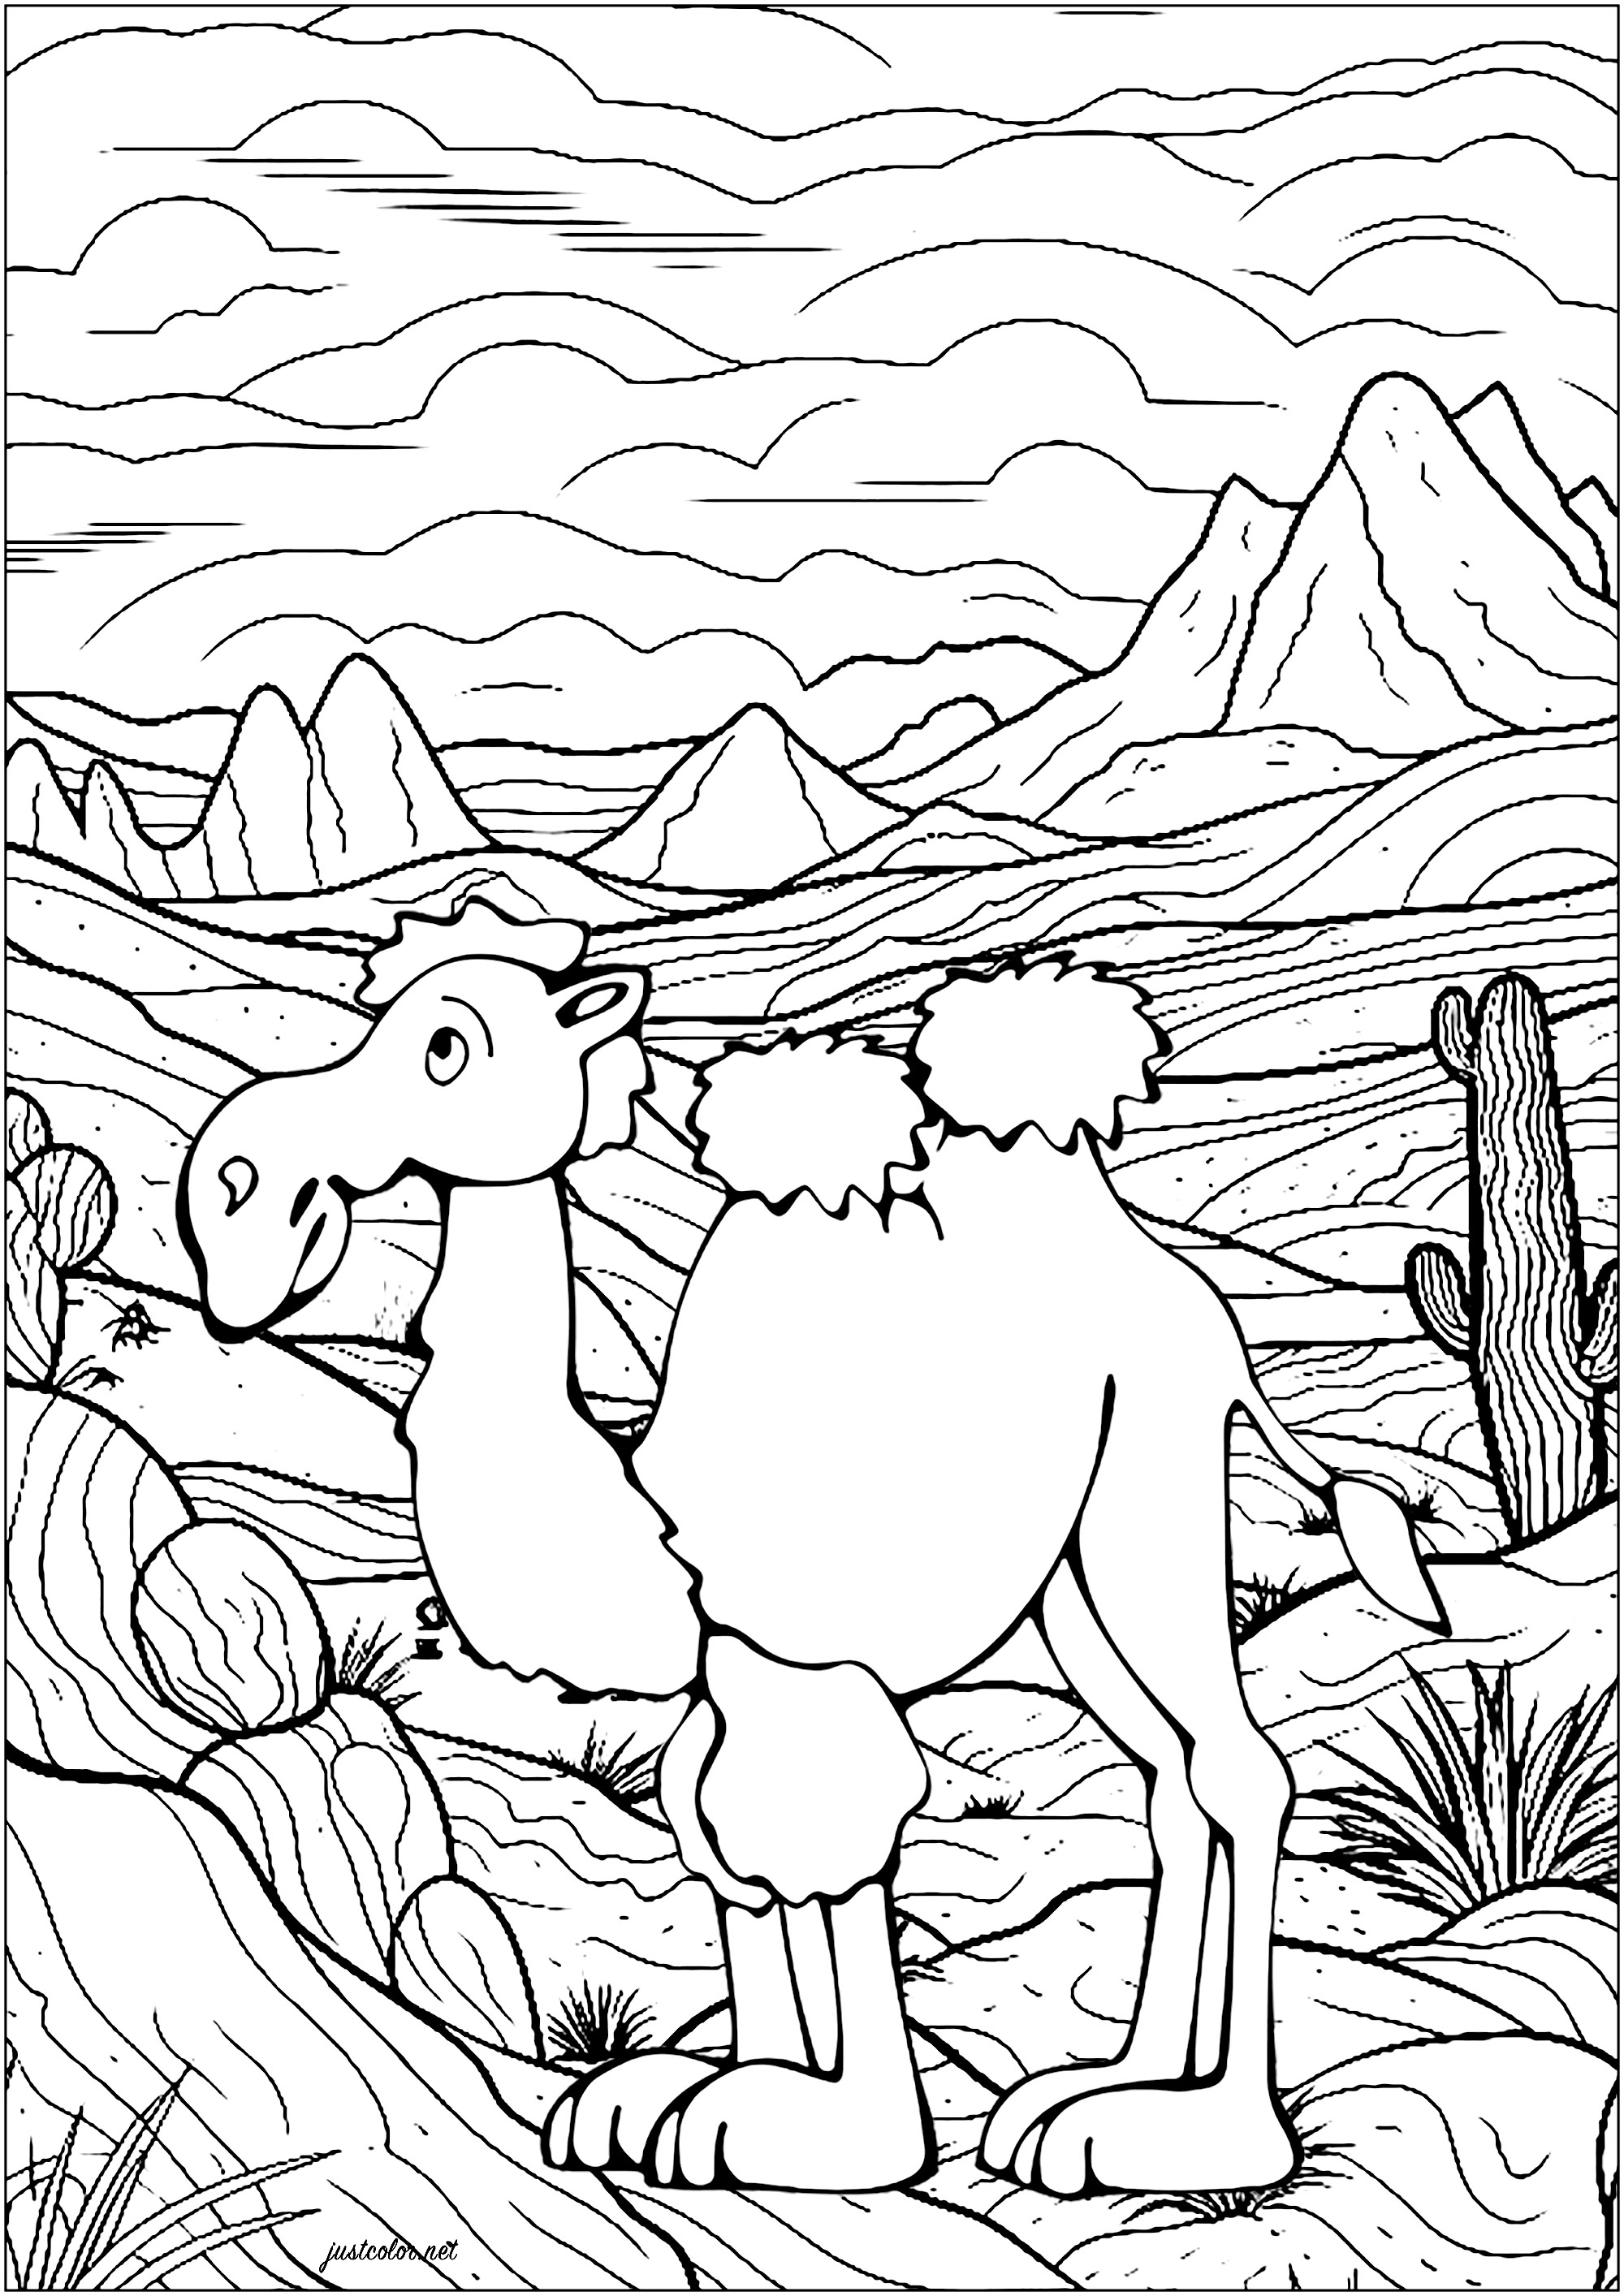 Camelo no deserto. Coloração de um camelo no deserto, com muitos pormenores no fundo: montanhas, cactos, céu nublado ...